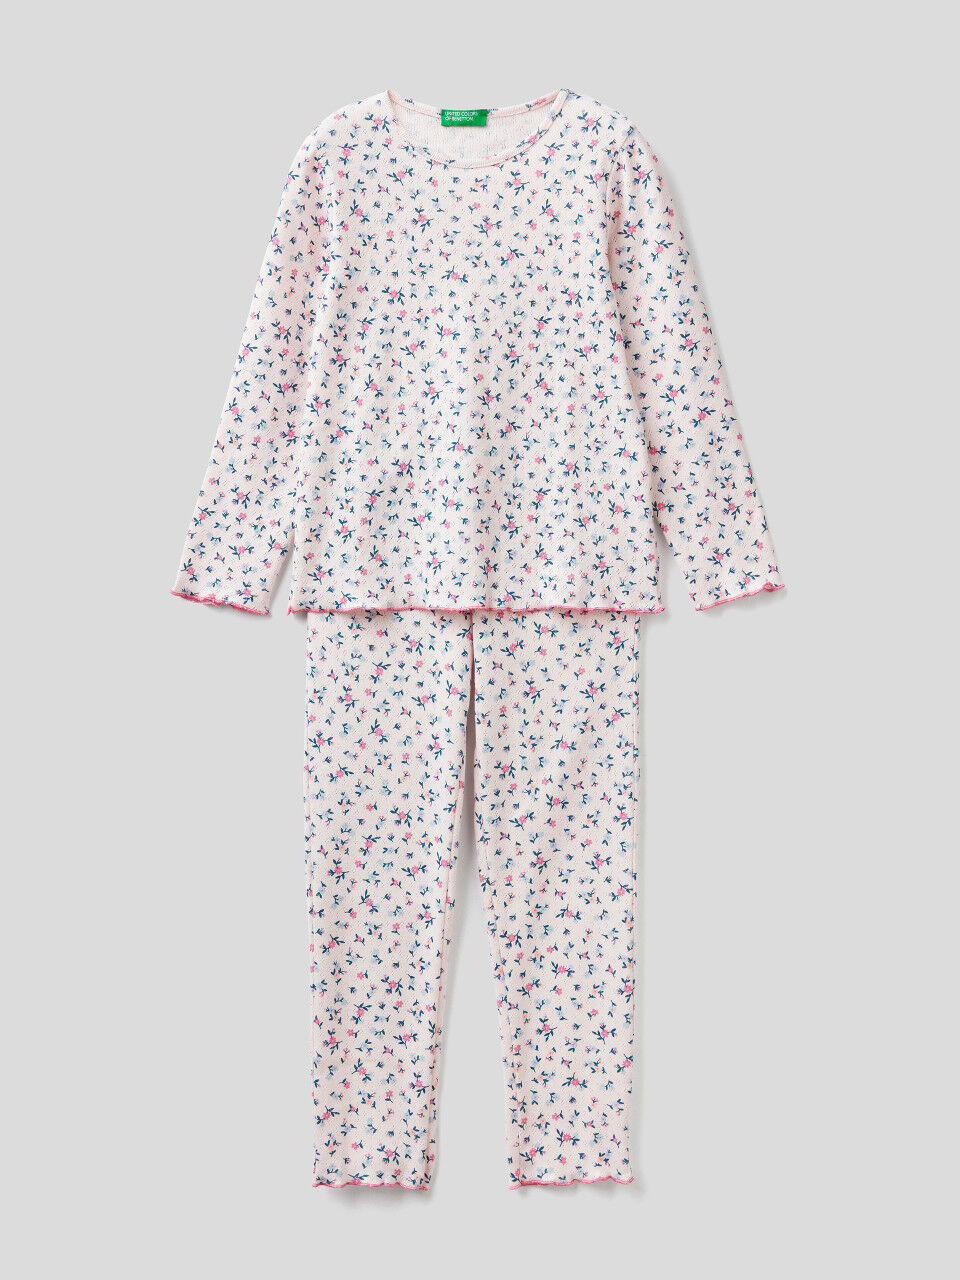 Gemusterter Pyjama in 100% Baumwolle